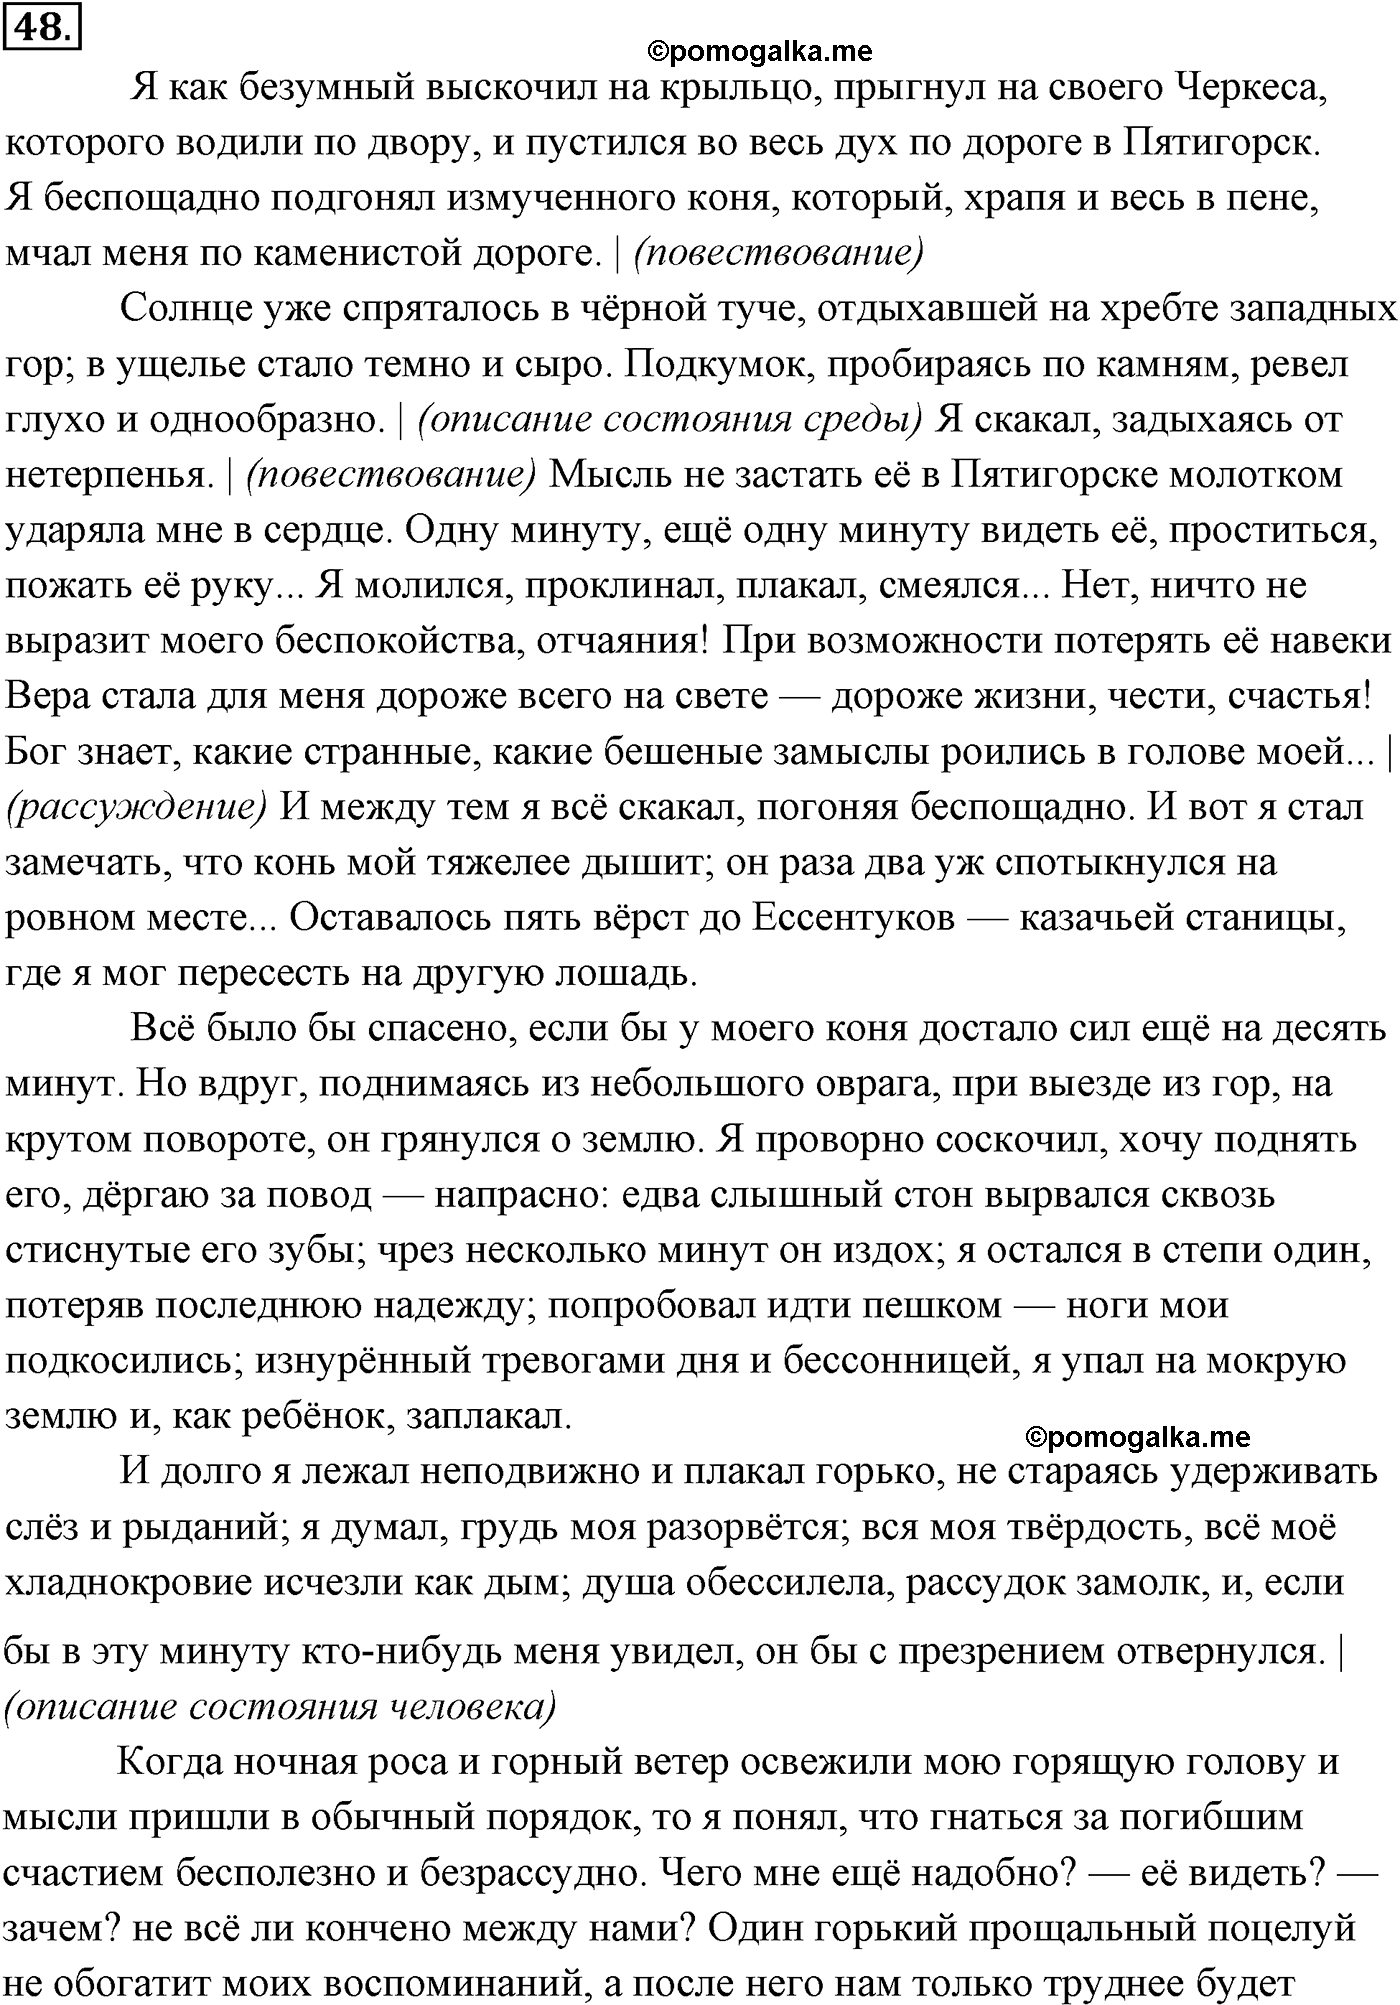 страница 29 номер 48 русский язык 9 класс Разумовская 2011 год